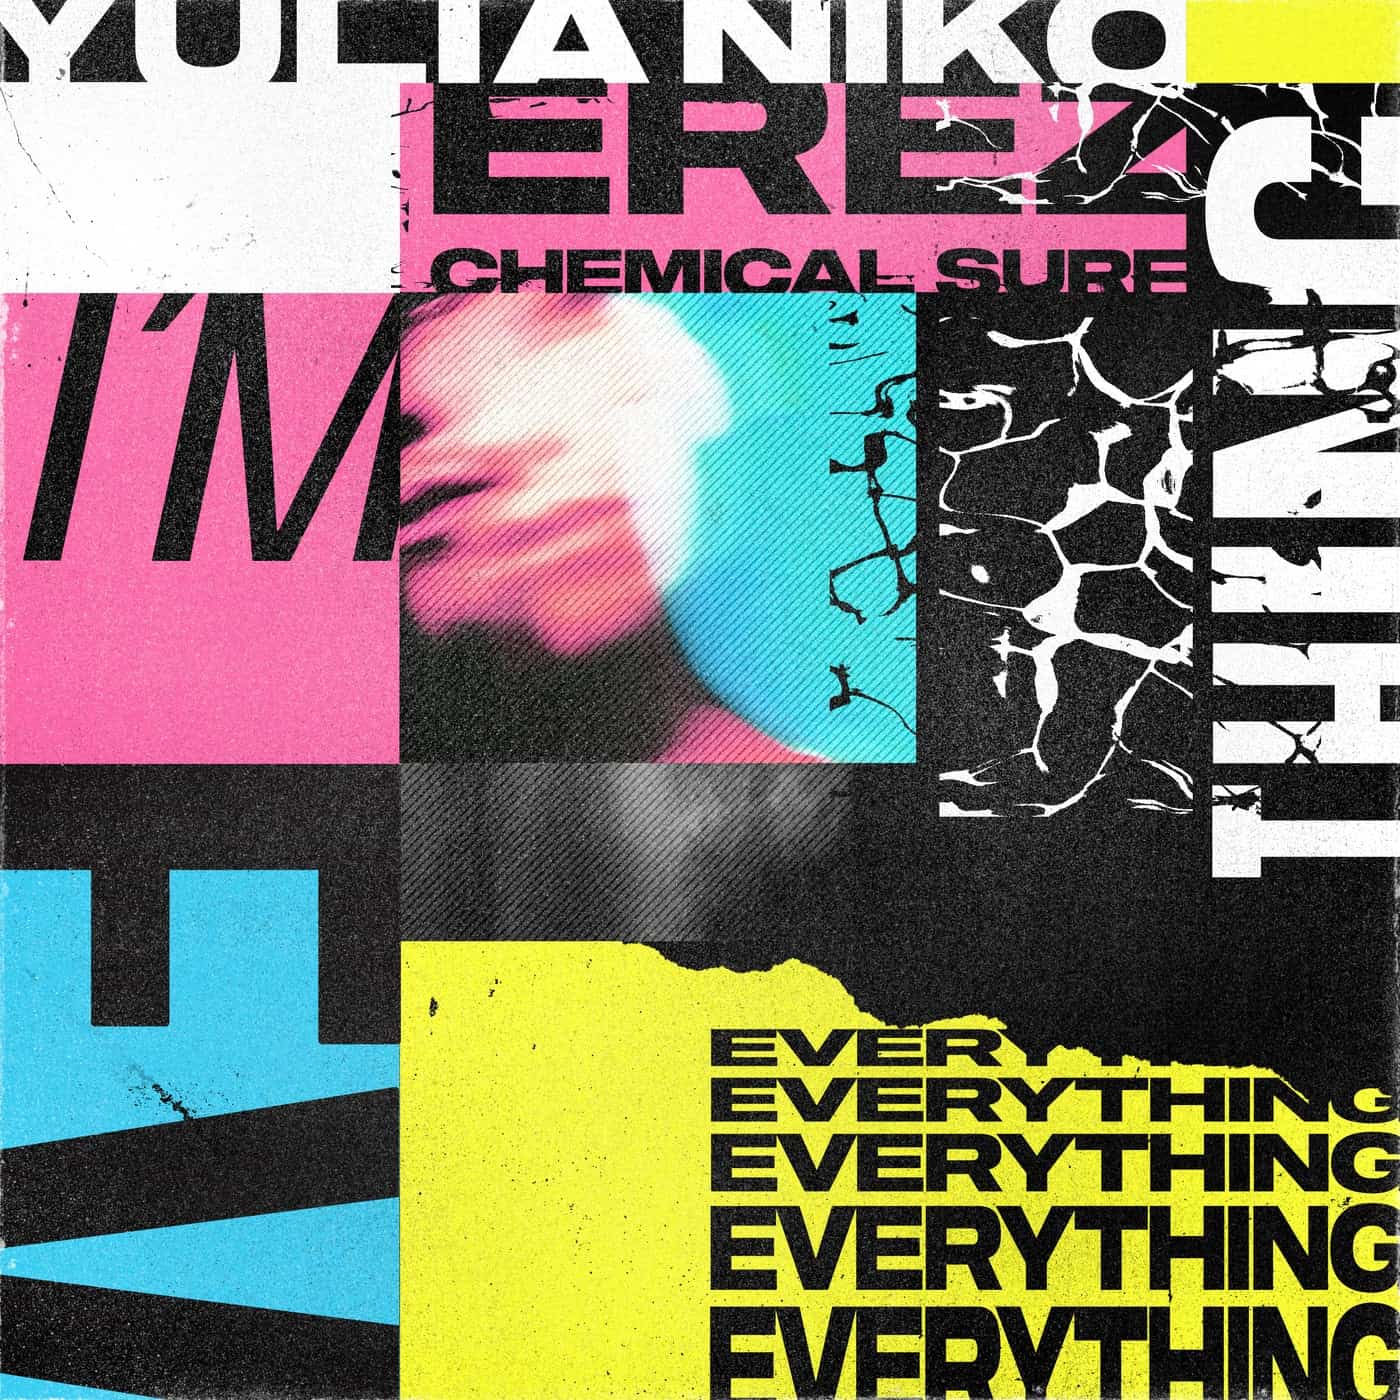 Download Erez, Yulia Niko - I'm Everything (Chemical Surf Remix) on Electrobuzz